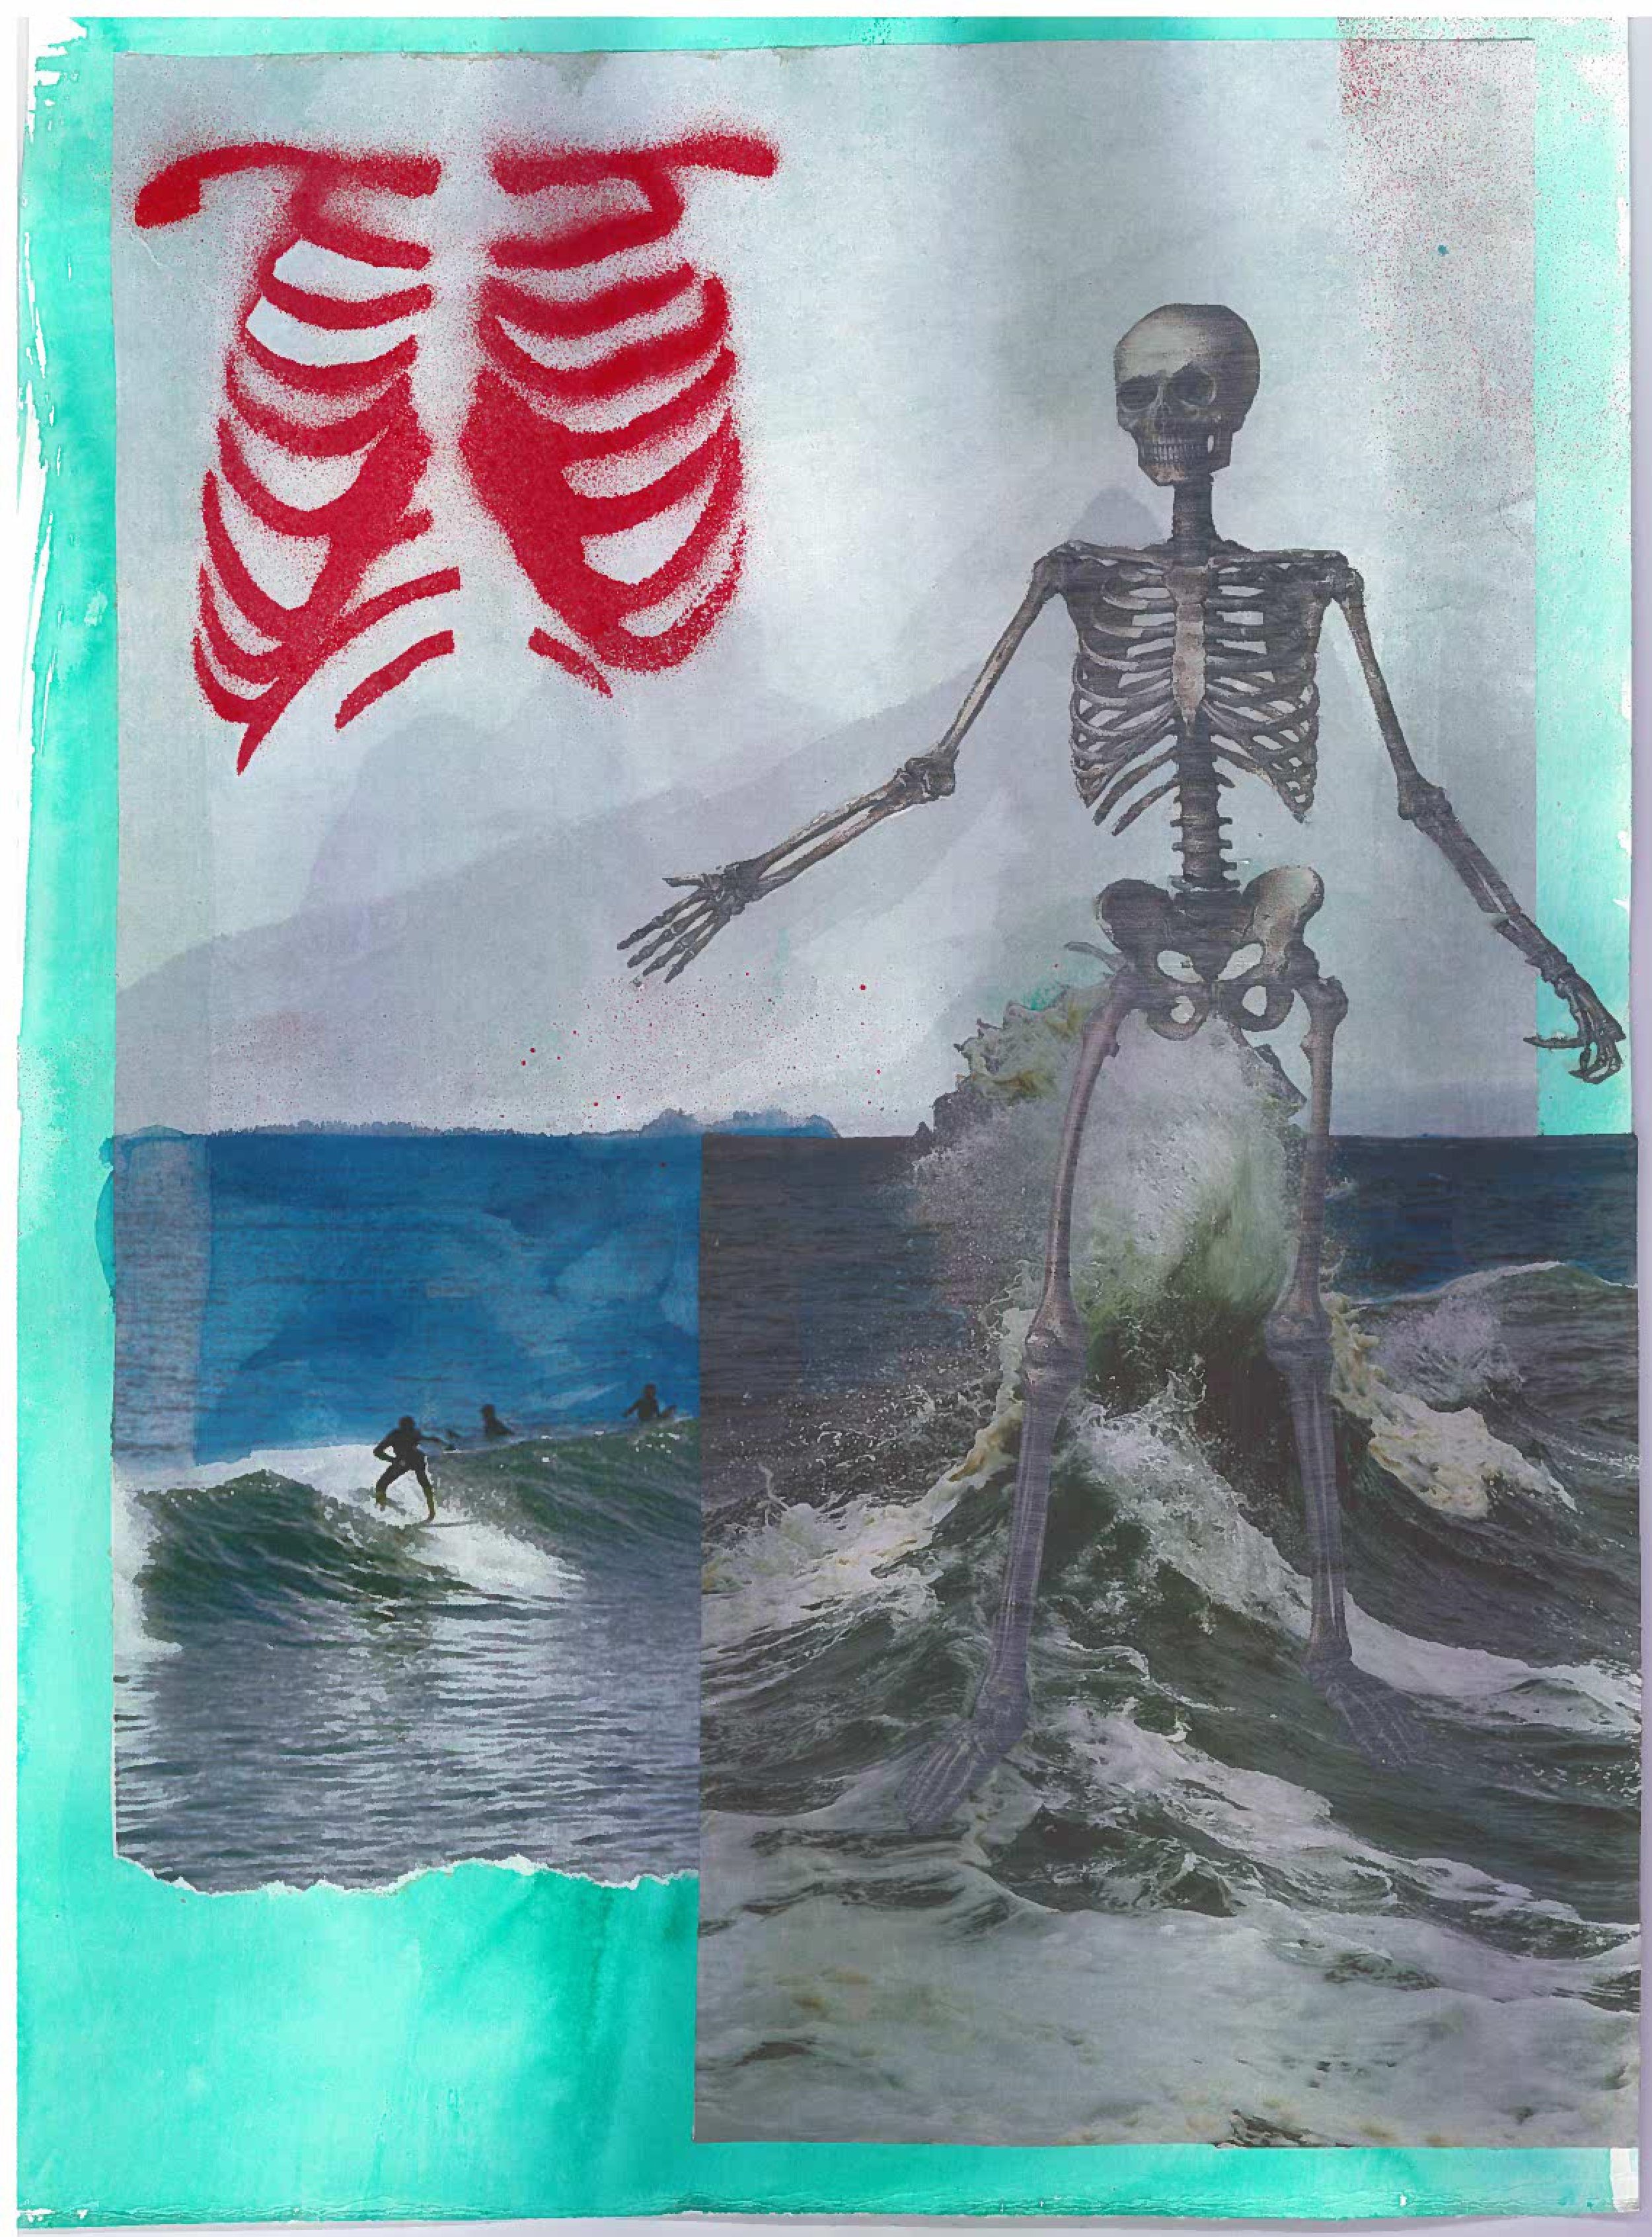 Surfing Skeleton